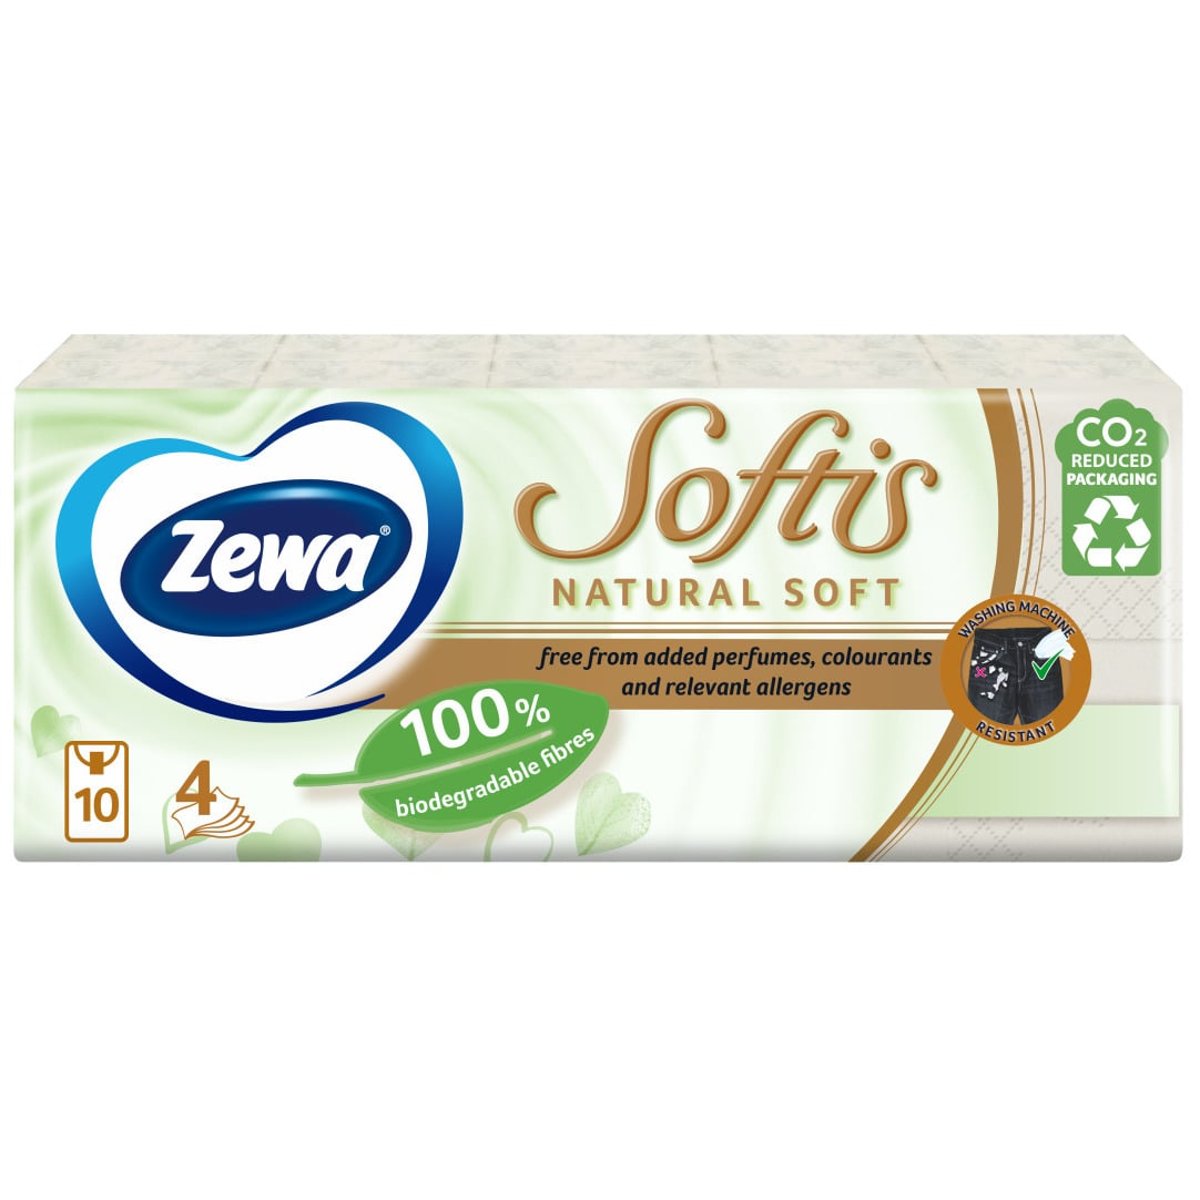 Zewa Softis Natural soft papírové kapesníky 4vrstvé, 10×9 ks